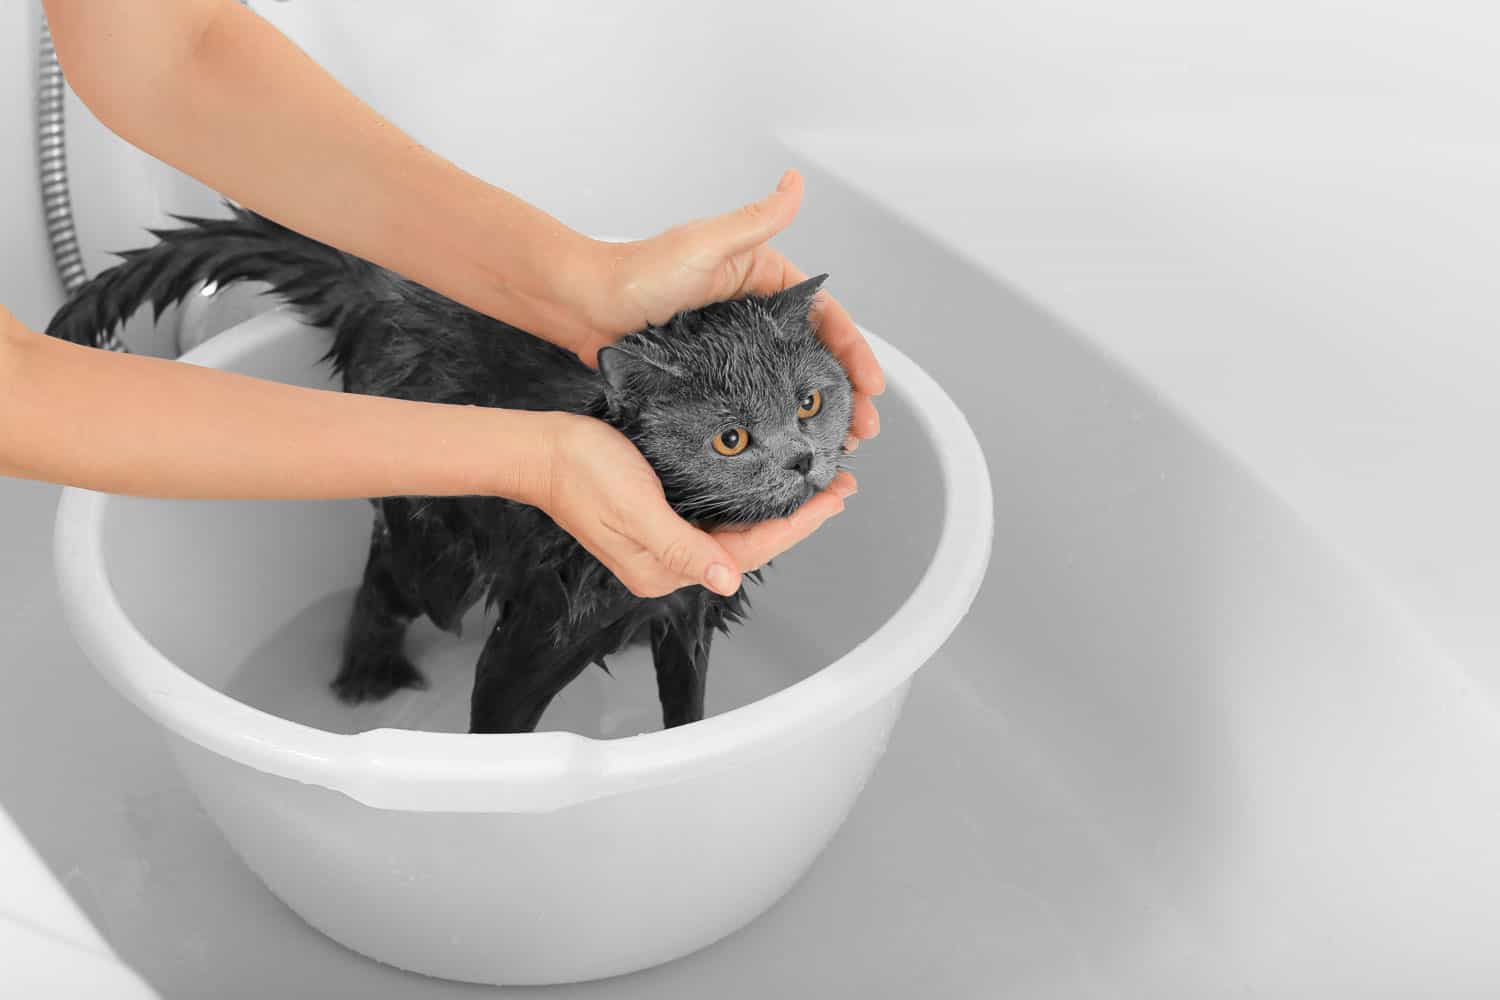 Hooman washing a cute black little kitten